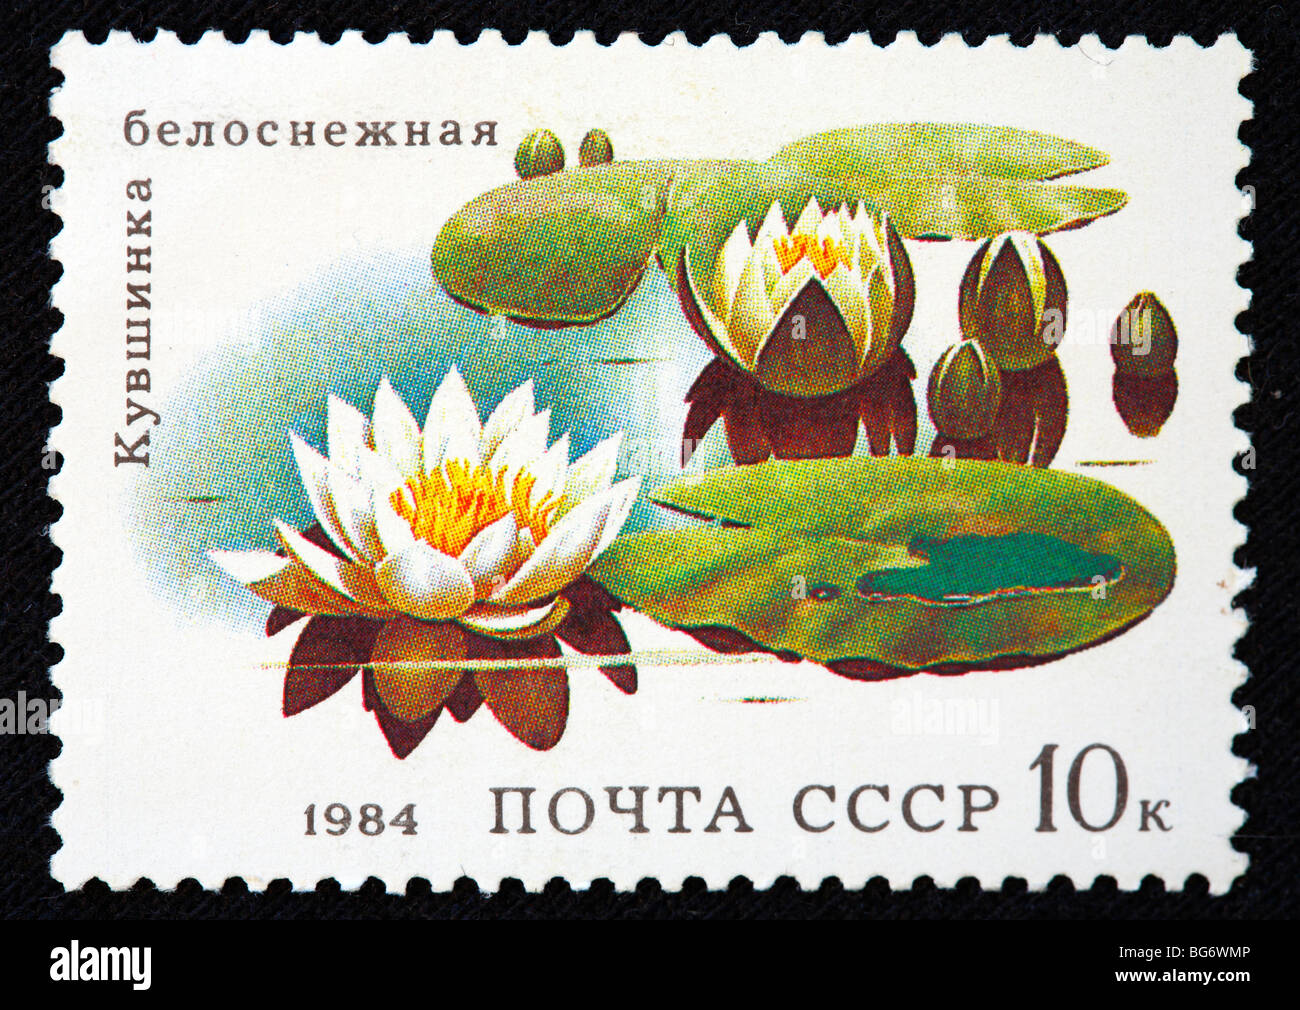 Nymphaea, étang lily, timbre-poste, URSS, 1984 Banque D'Images